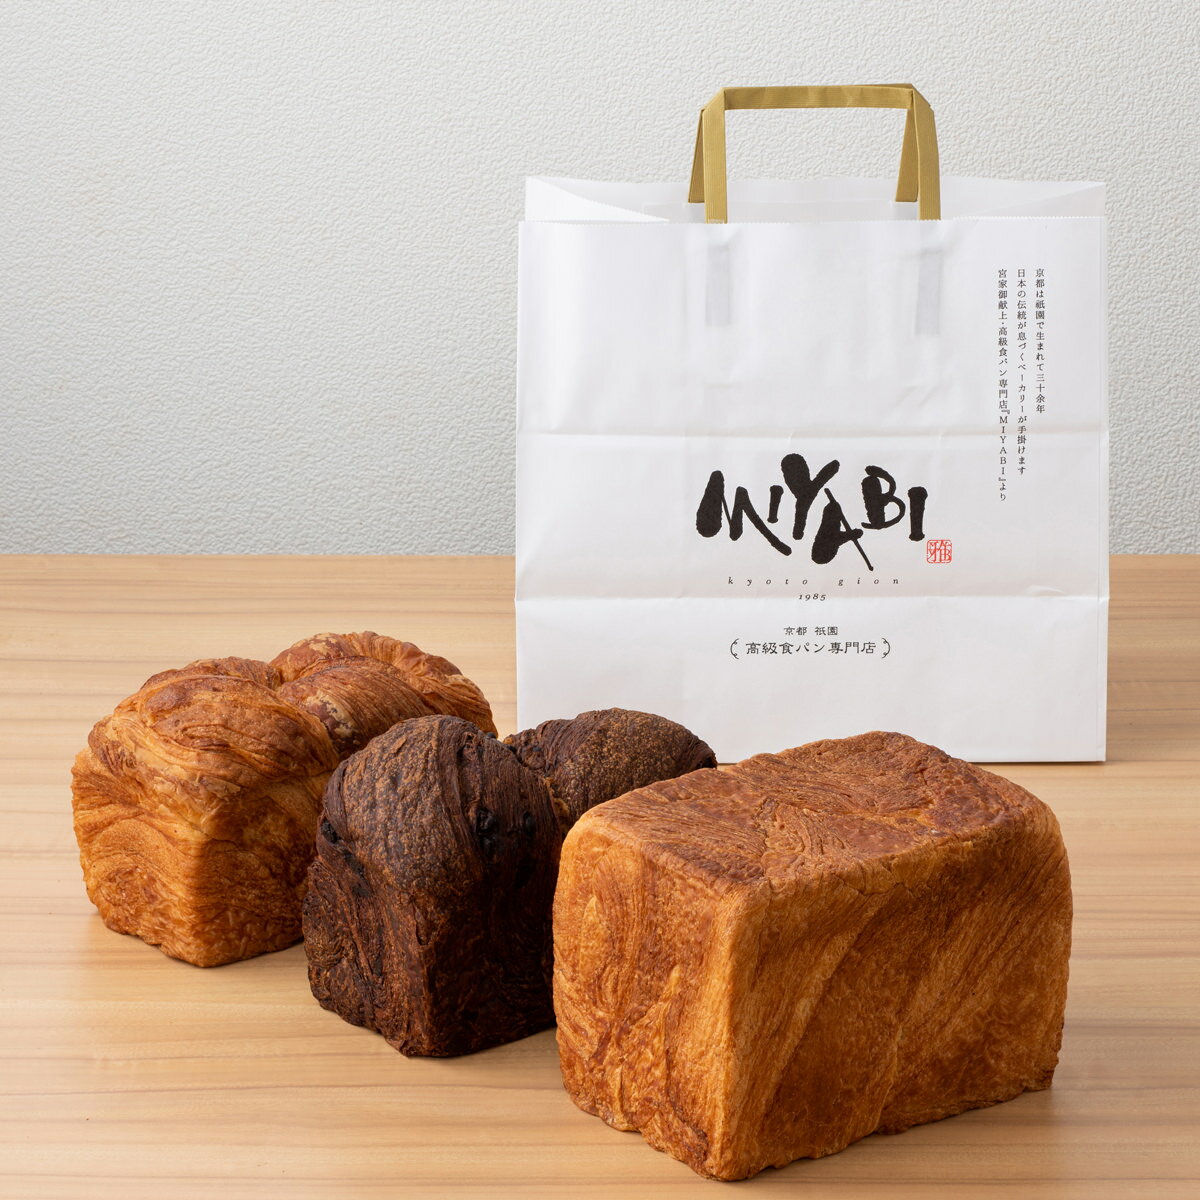 高級食パン ミヤビパン 人気3本セット メープル 食パン MIYABI パン プレーン デニッシュ食パン ショコラ MIYABIパン 高級 パン お取り寄せ